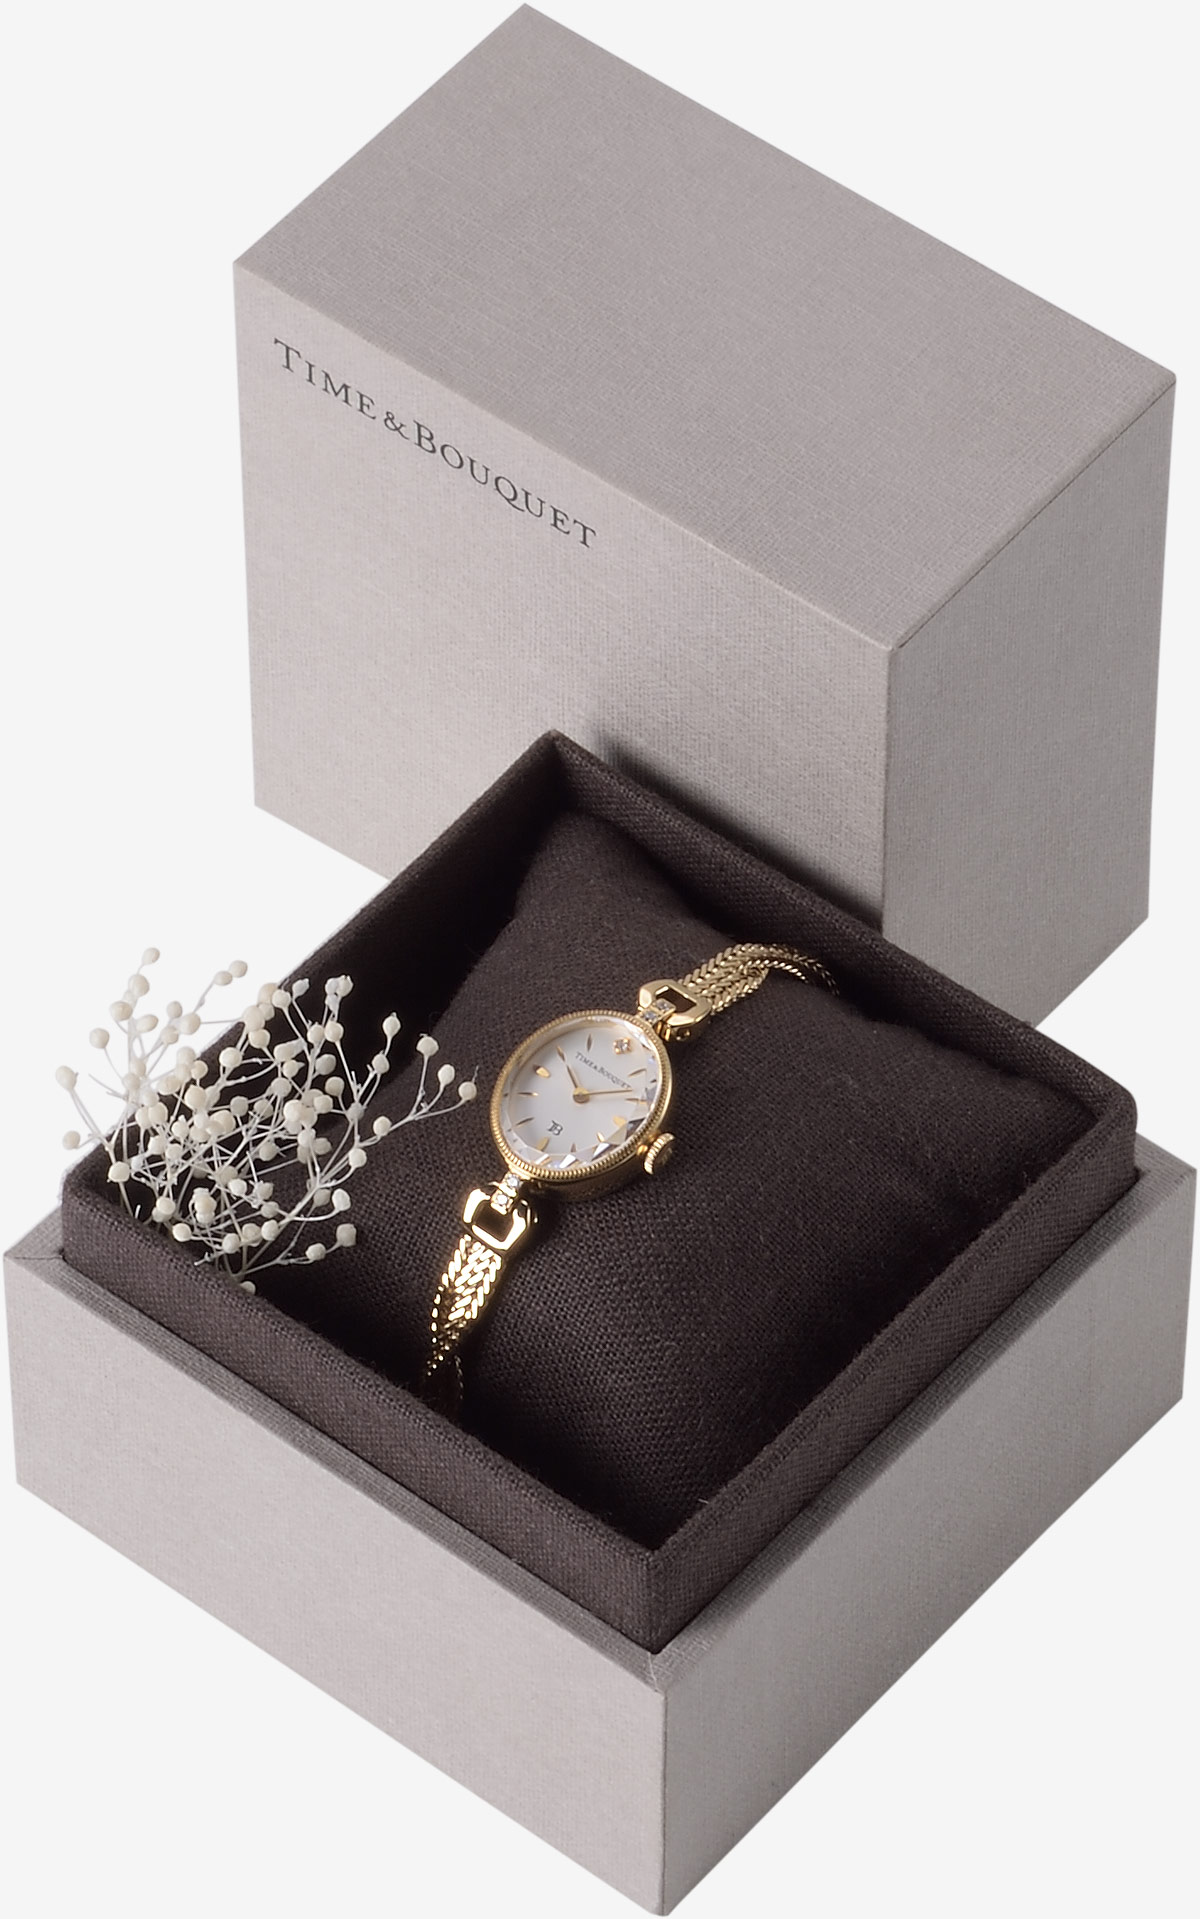 ハーフリネンの生地を内張りとクッションに使用した贅沢なギフトボックスに収納した腕時計ミュゲ